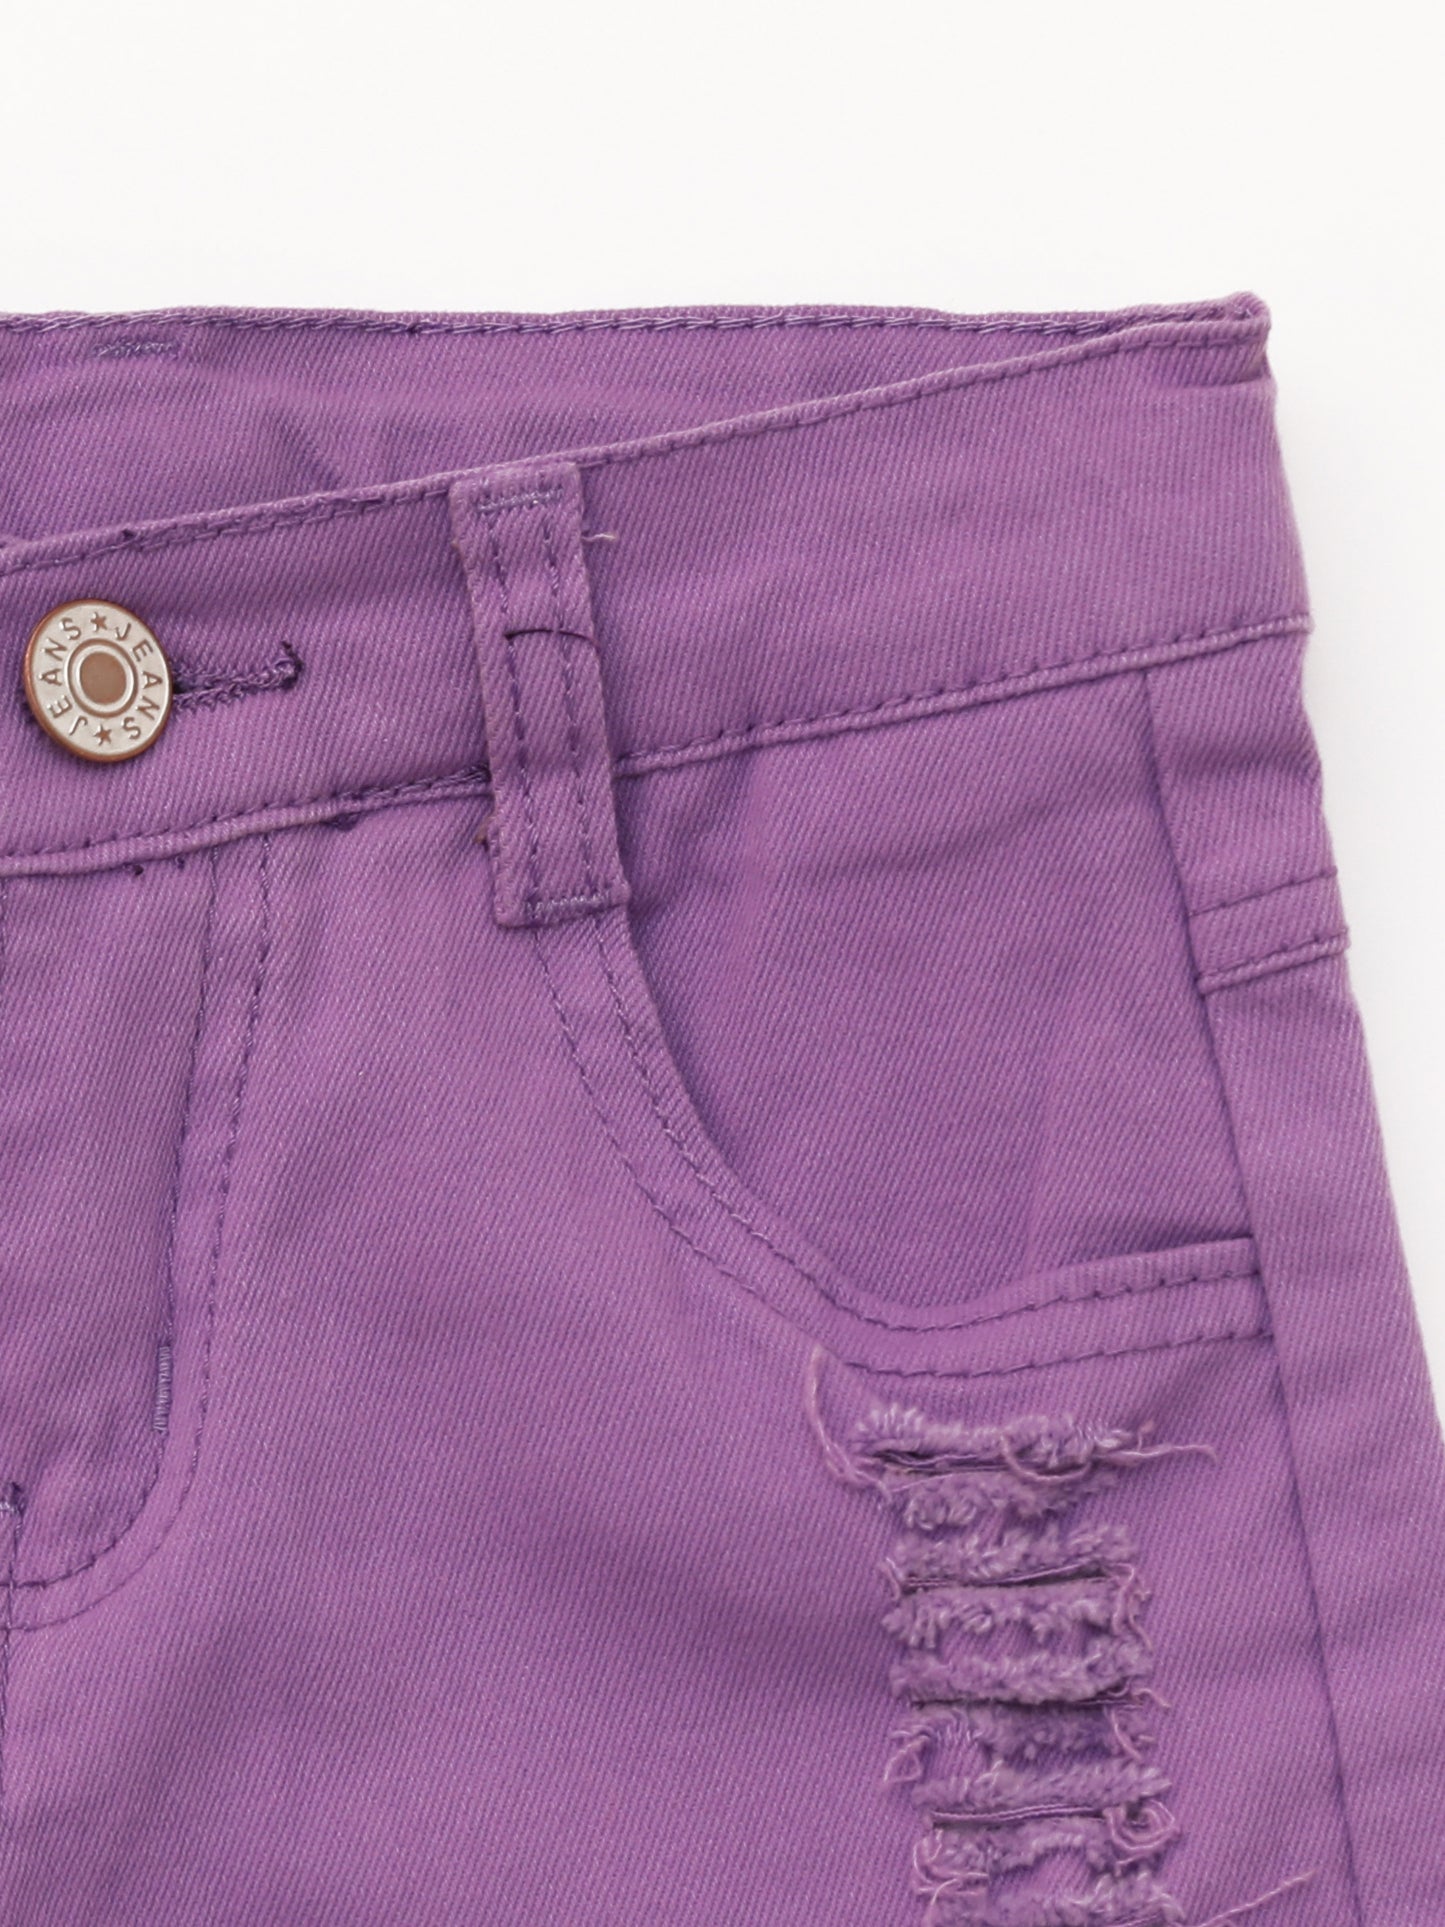 Kids Distressed Purple Denim Shorts